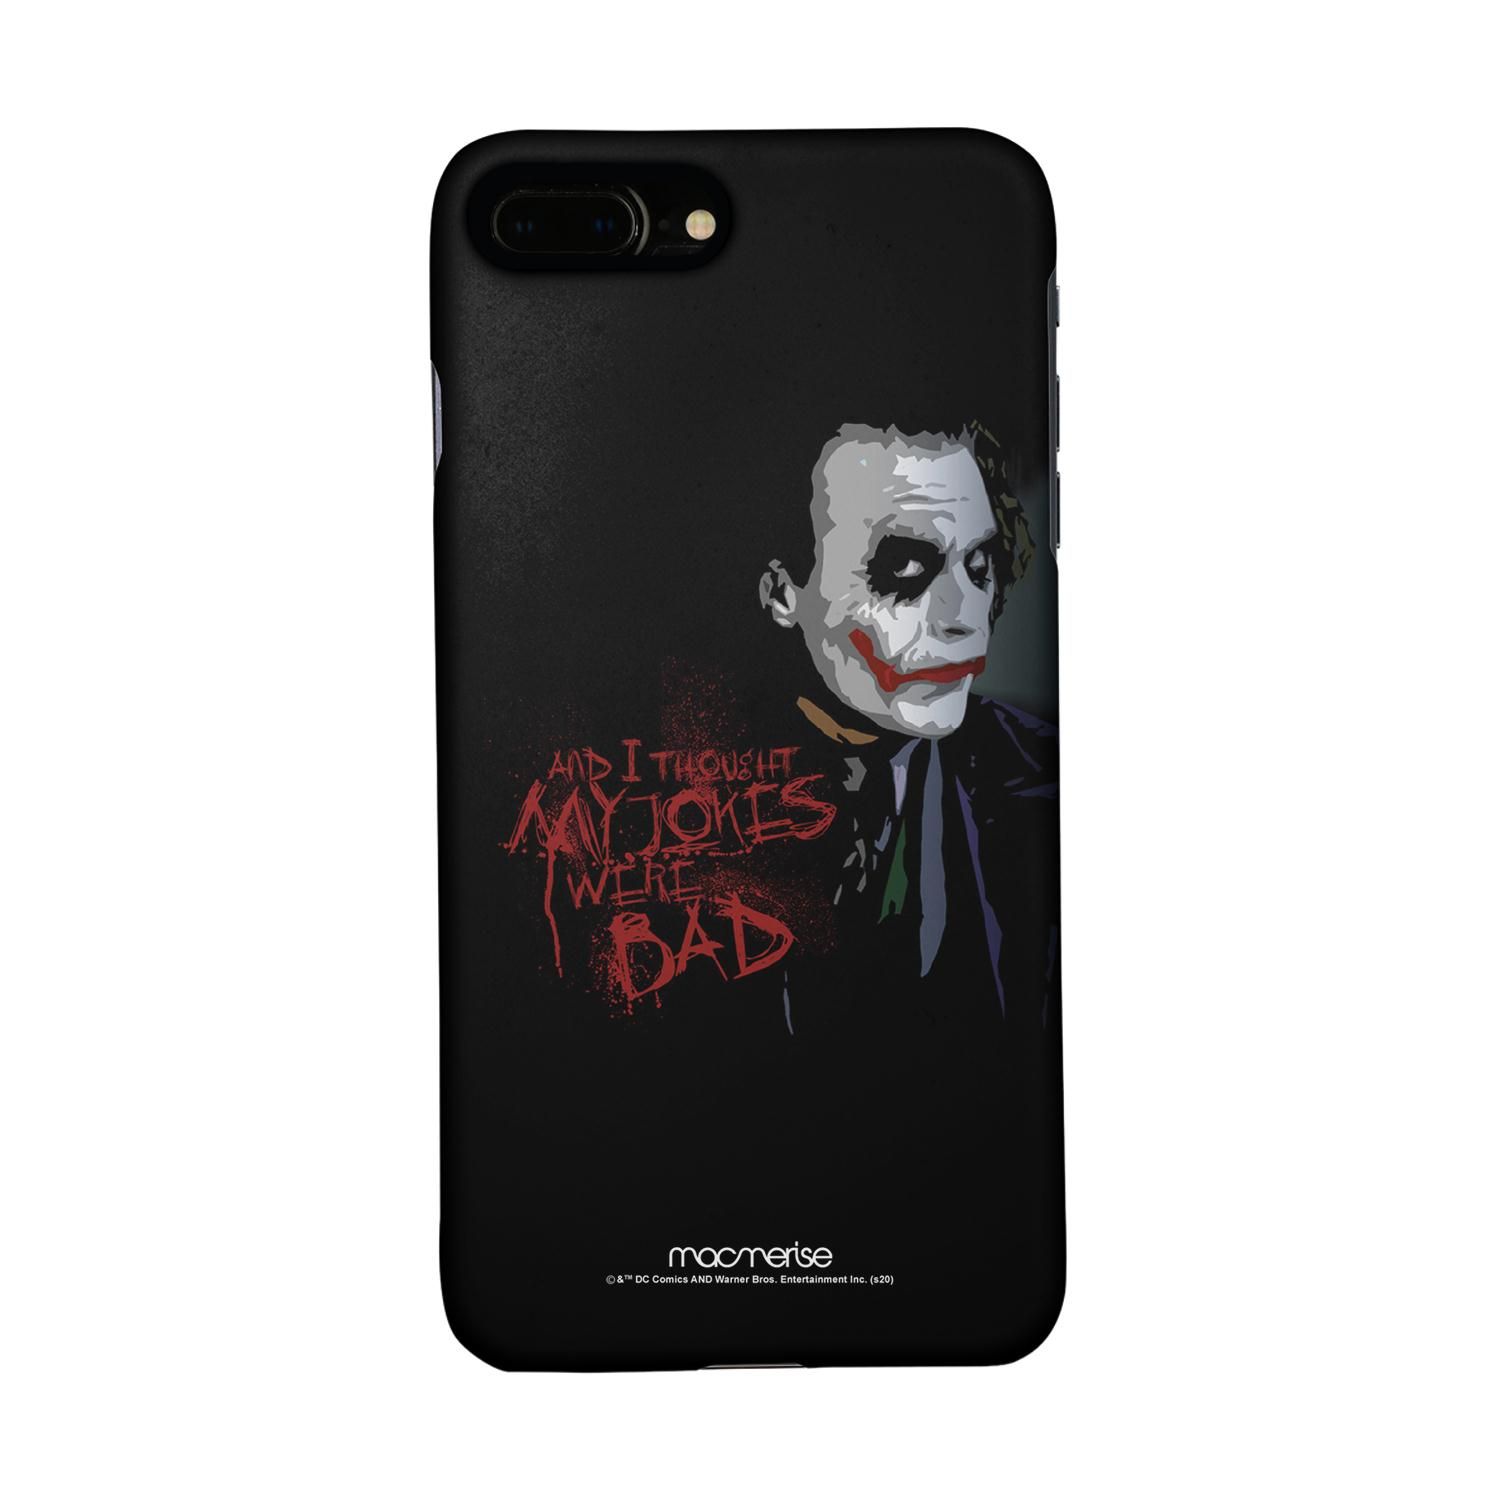 Buy Jokers Sarcasm - Sleek Phone Case for iPhone 7 Plus Online